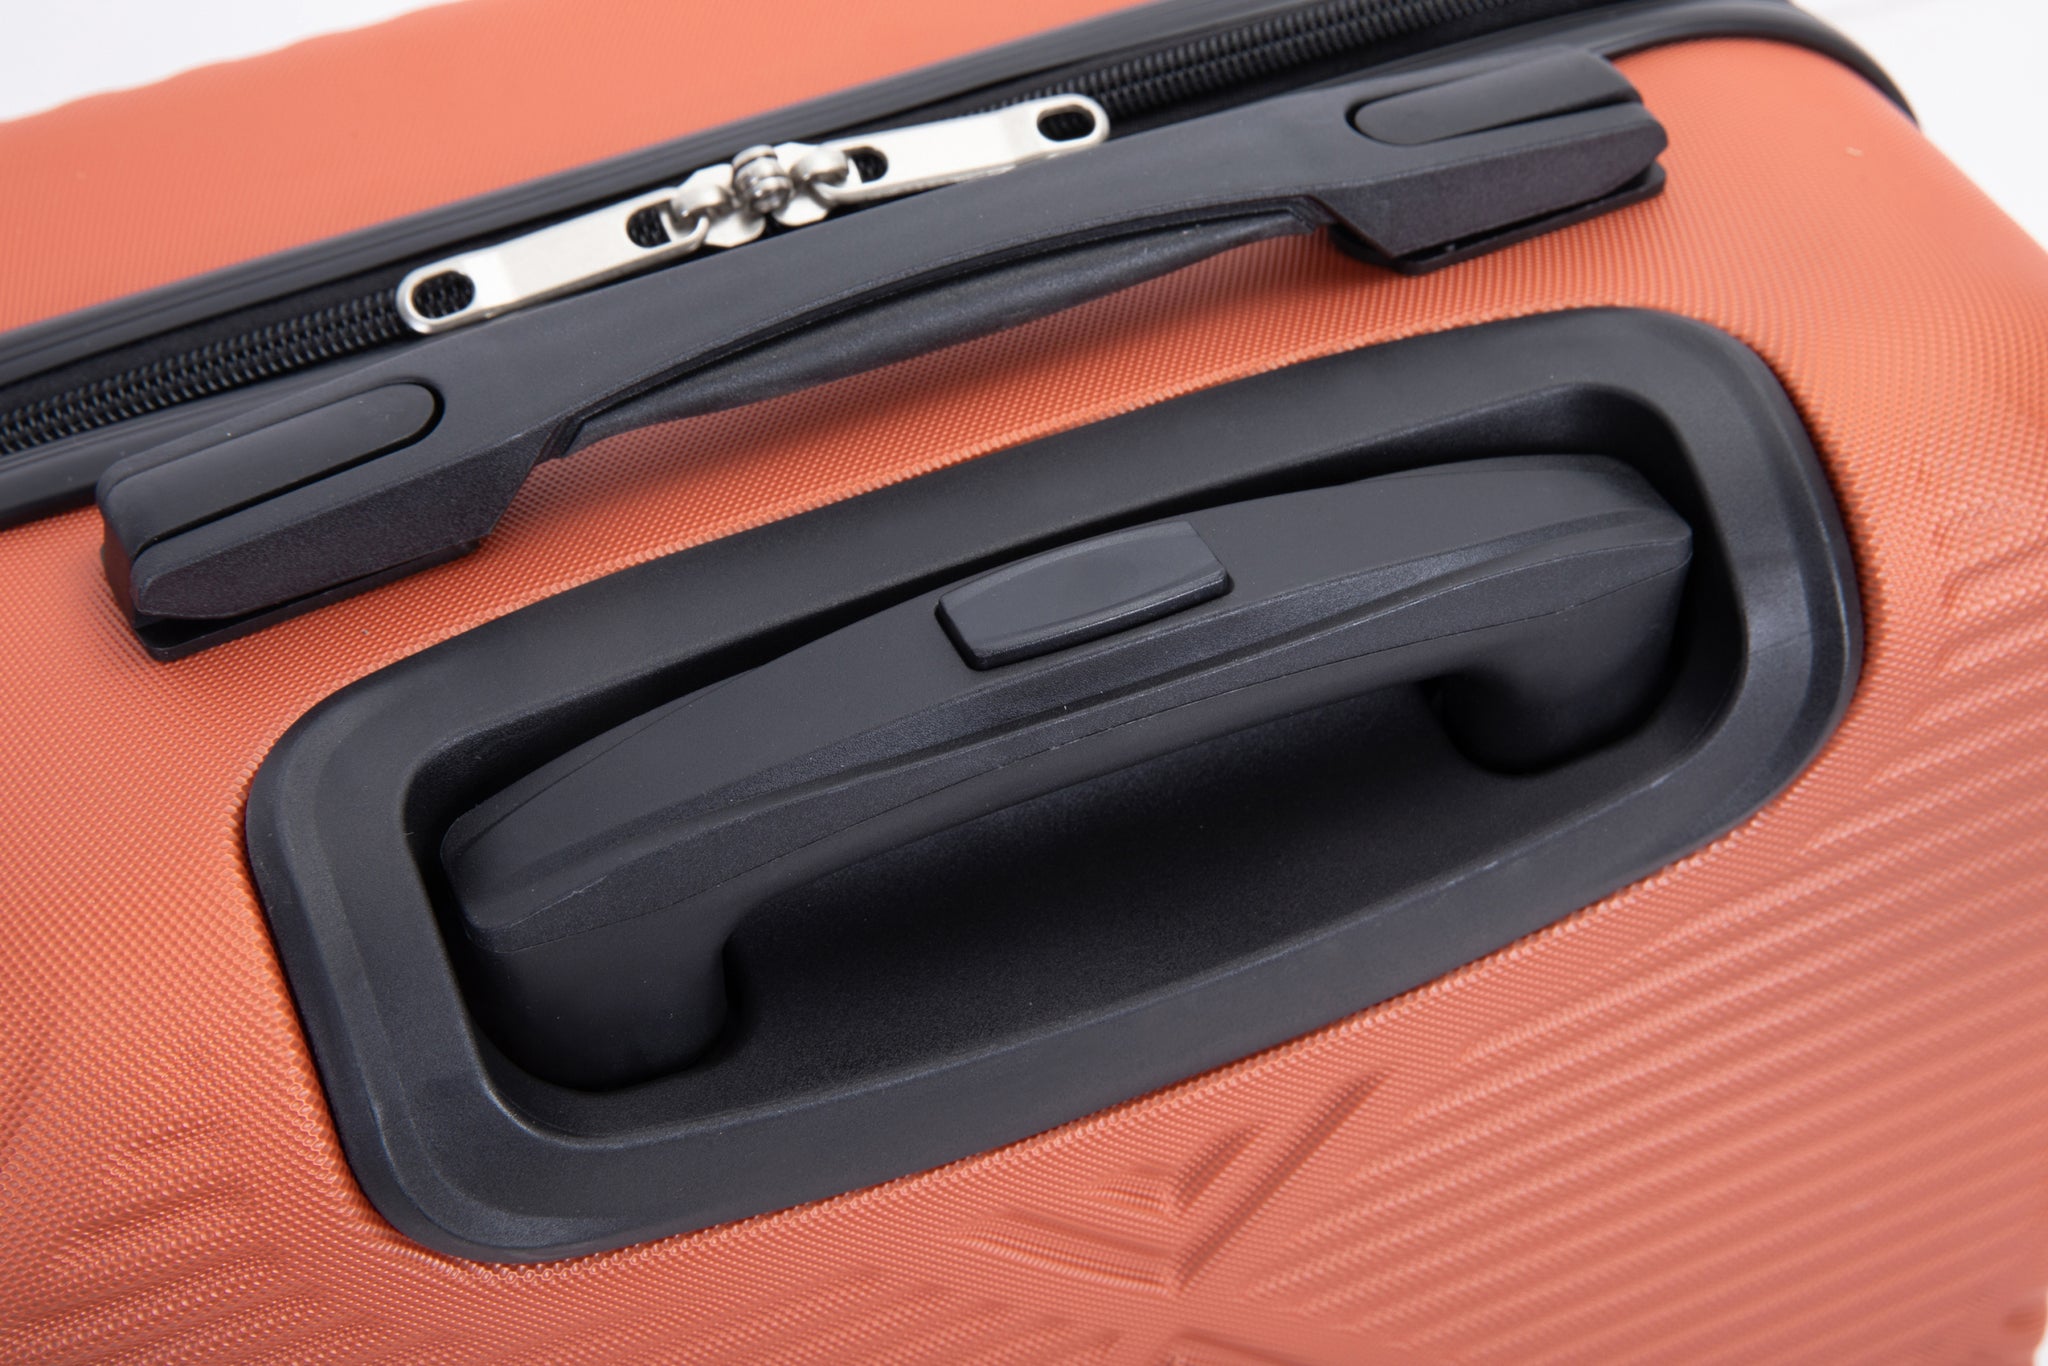 2Piece Luggage Sets ABS Lightweight Suitcase , Spinner orange+dark orange-abs